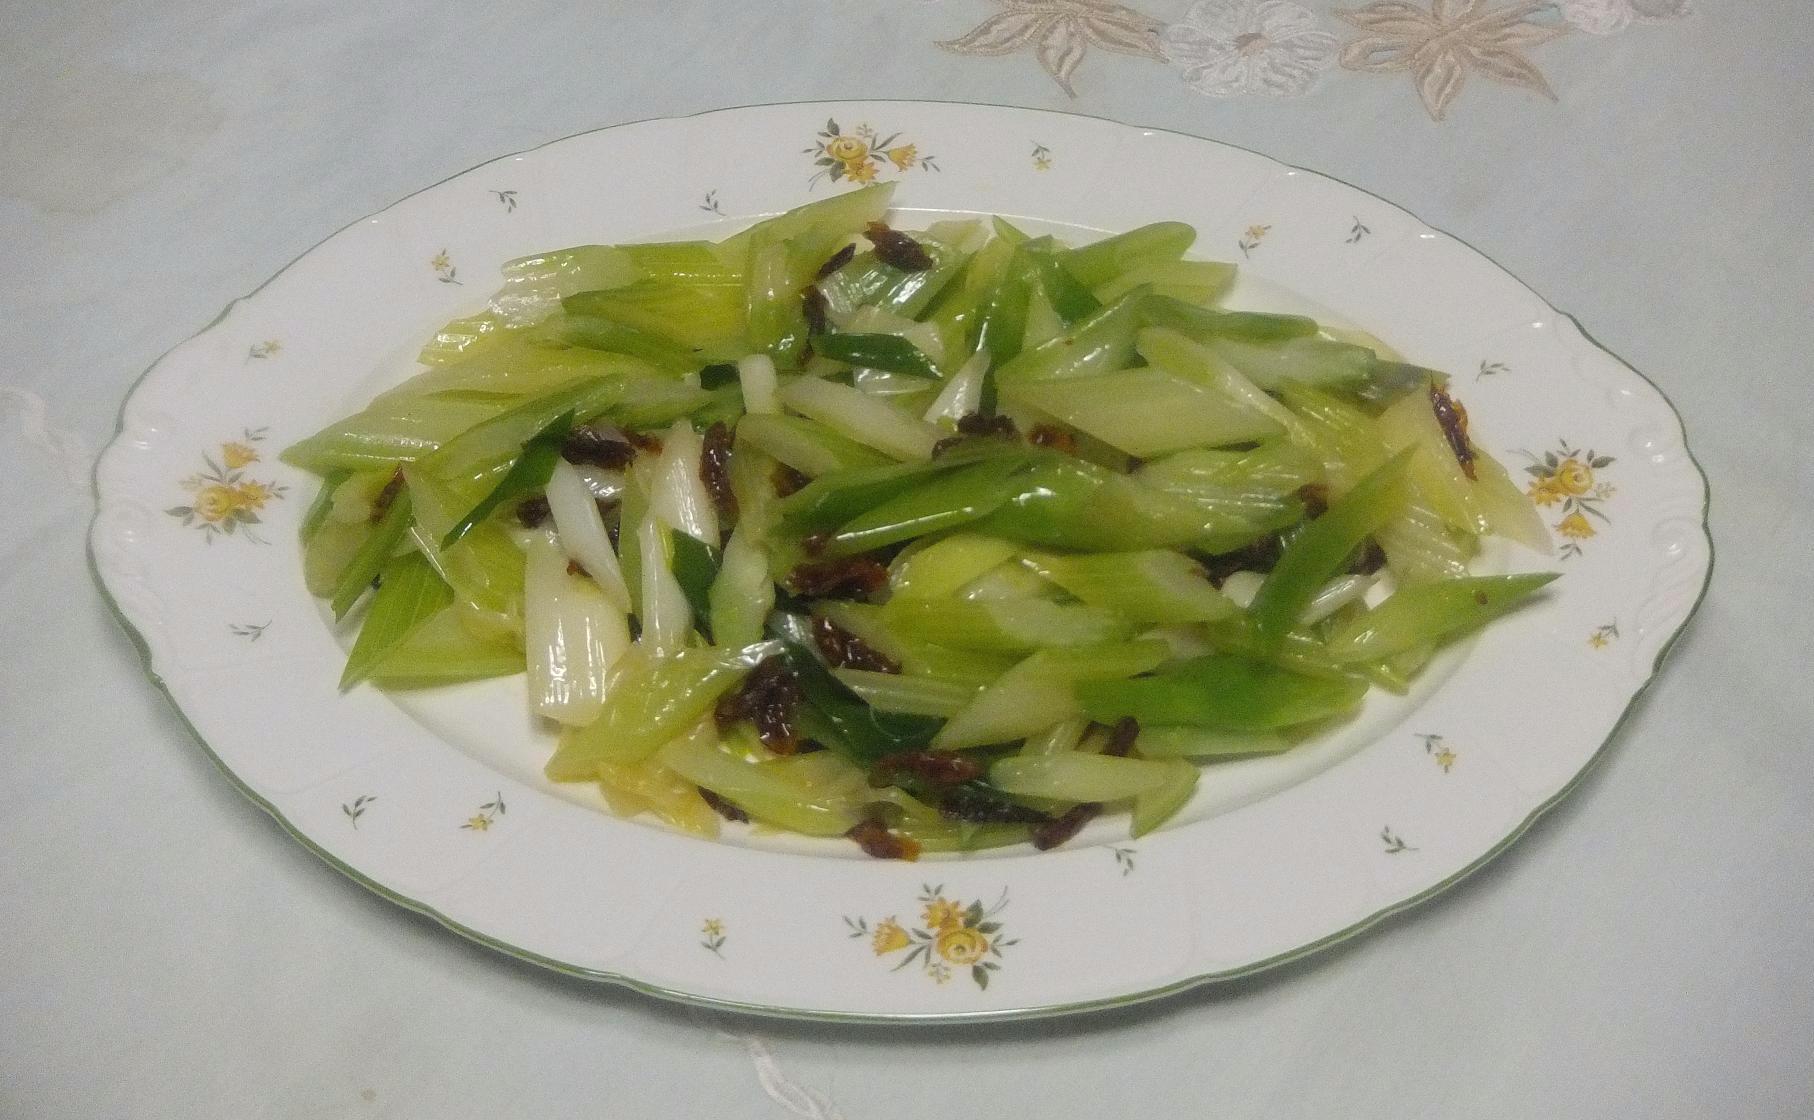 お家で作れる セロリと長葱のマリネー の作り方 小林 素子 クスパ